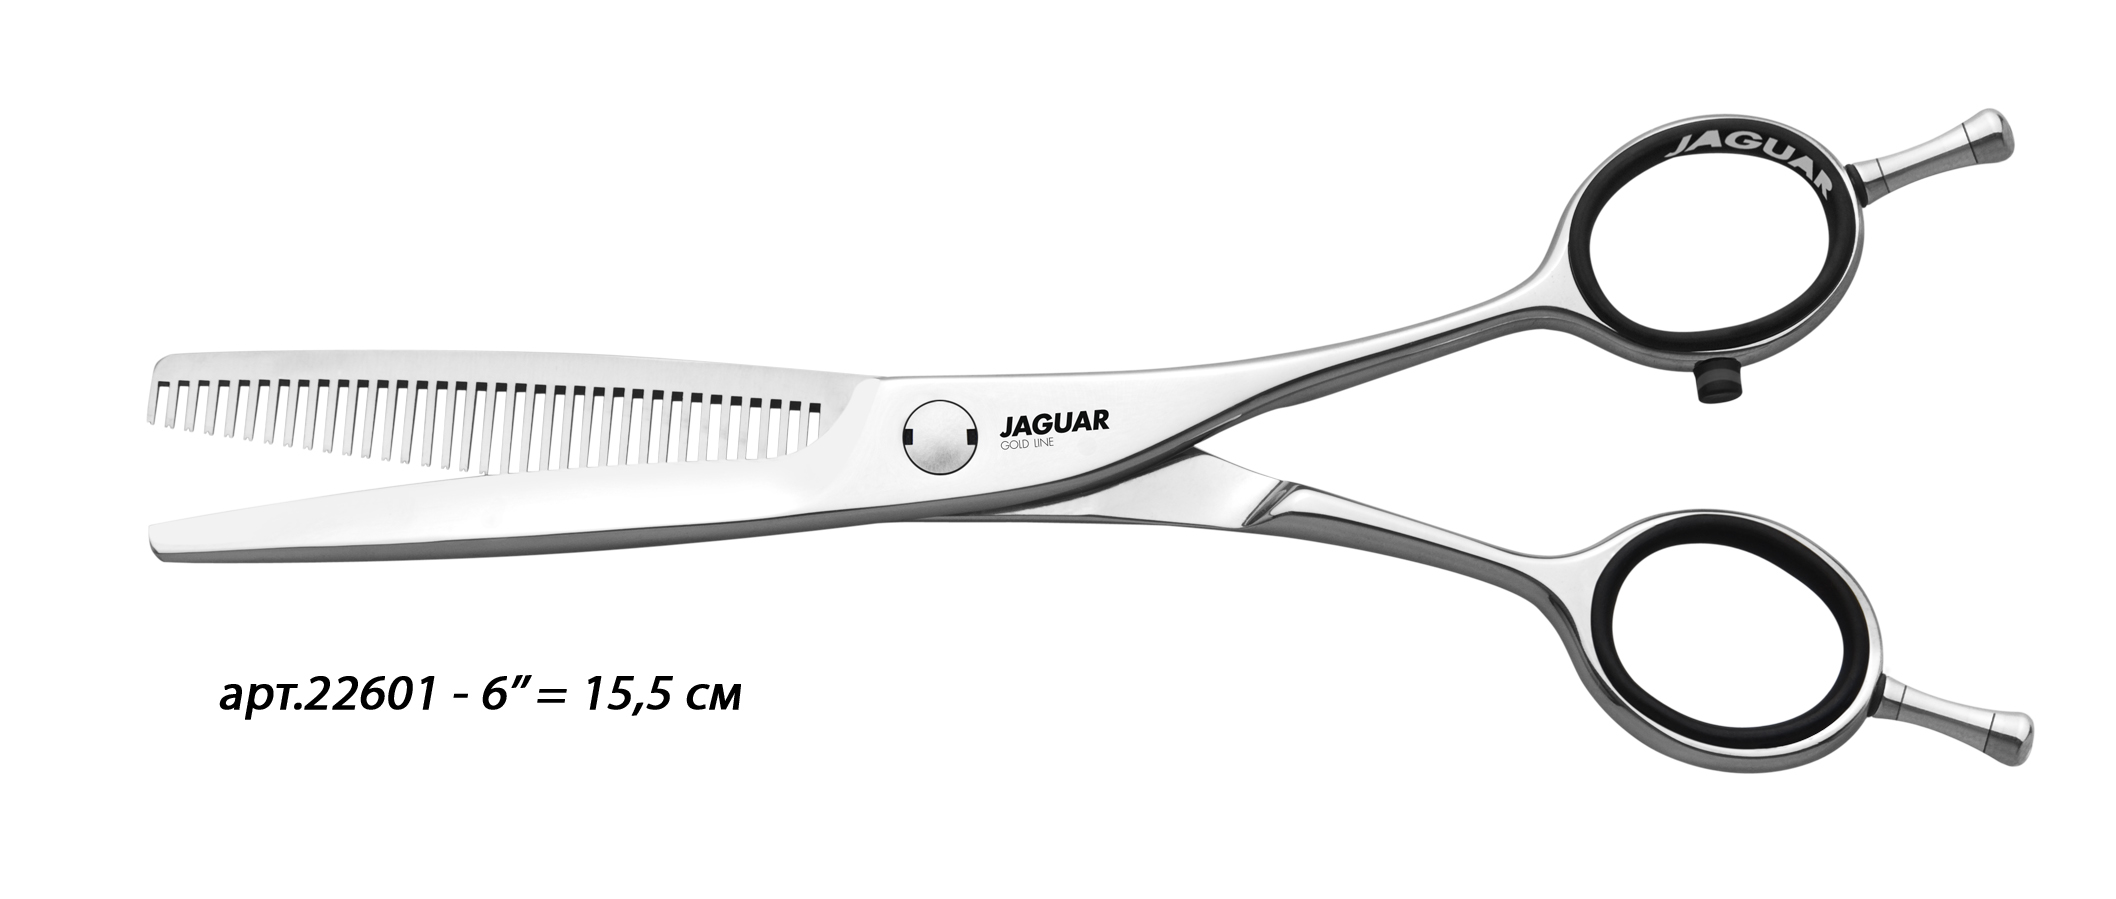 JAGUAR Ножницы Jaguar Dynasty CC35 фил.6'(15,5cm)GL